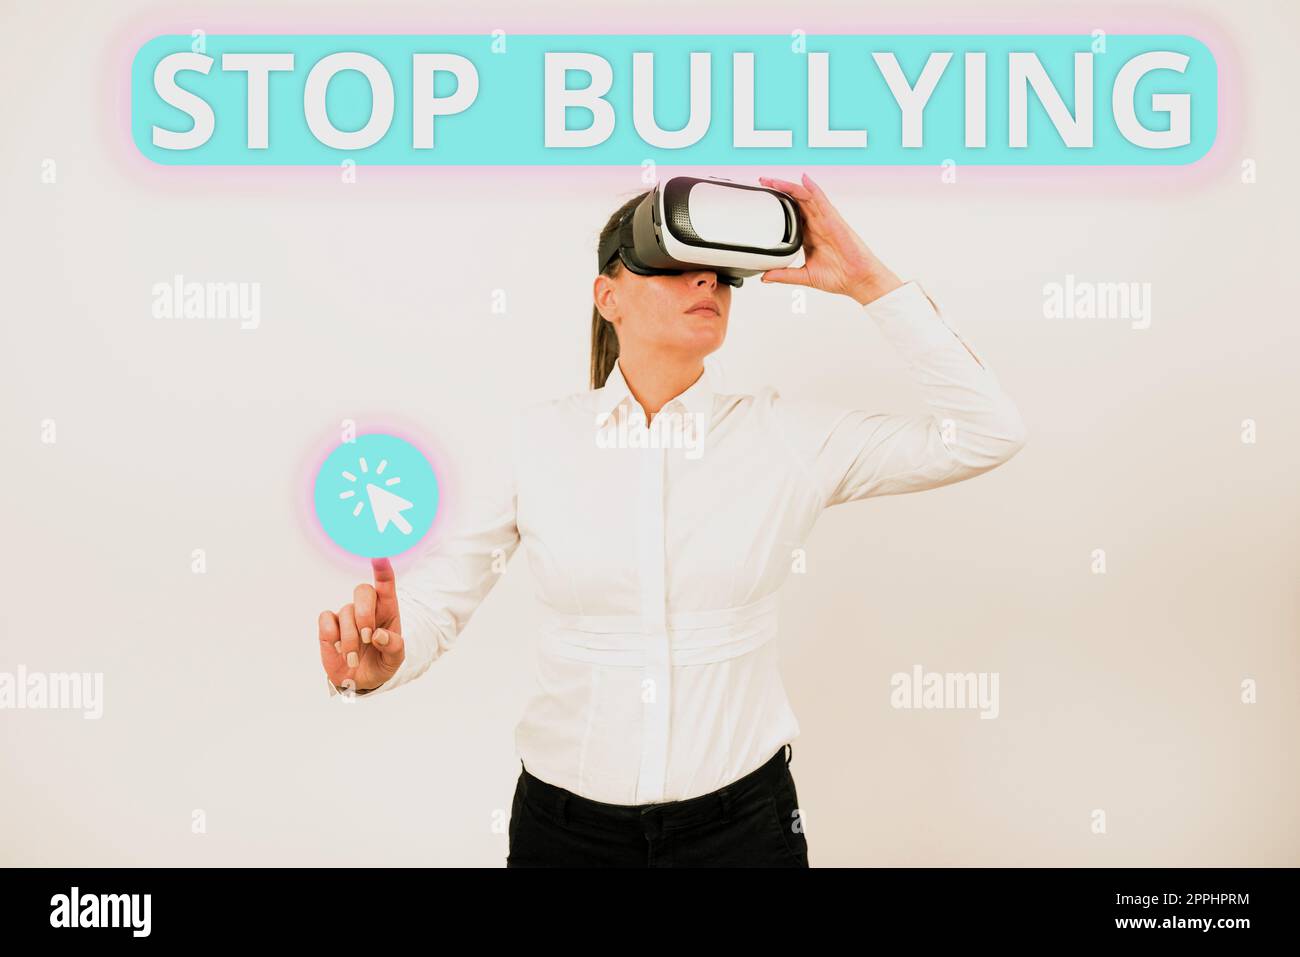 Cartello con la scritta Stop bullying (Interrompi bullismo). Concetto che significa combattere ed eliminare questo comportamento inaccettabile aggressivo Foto Stock